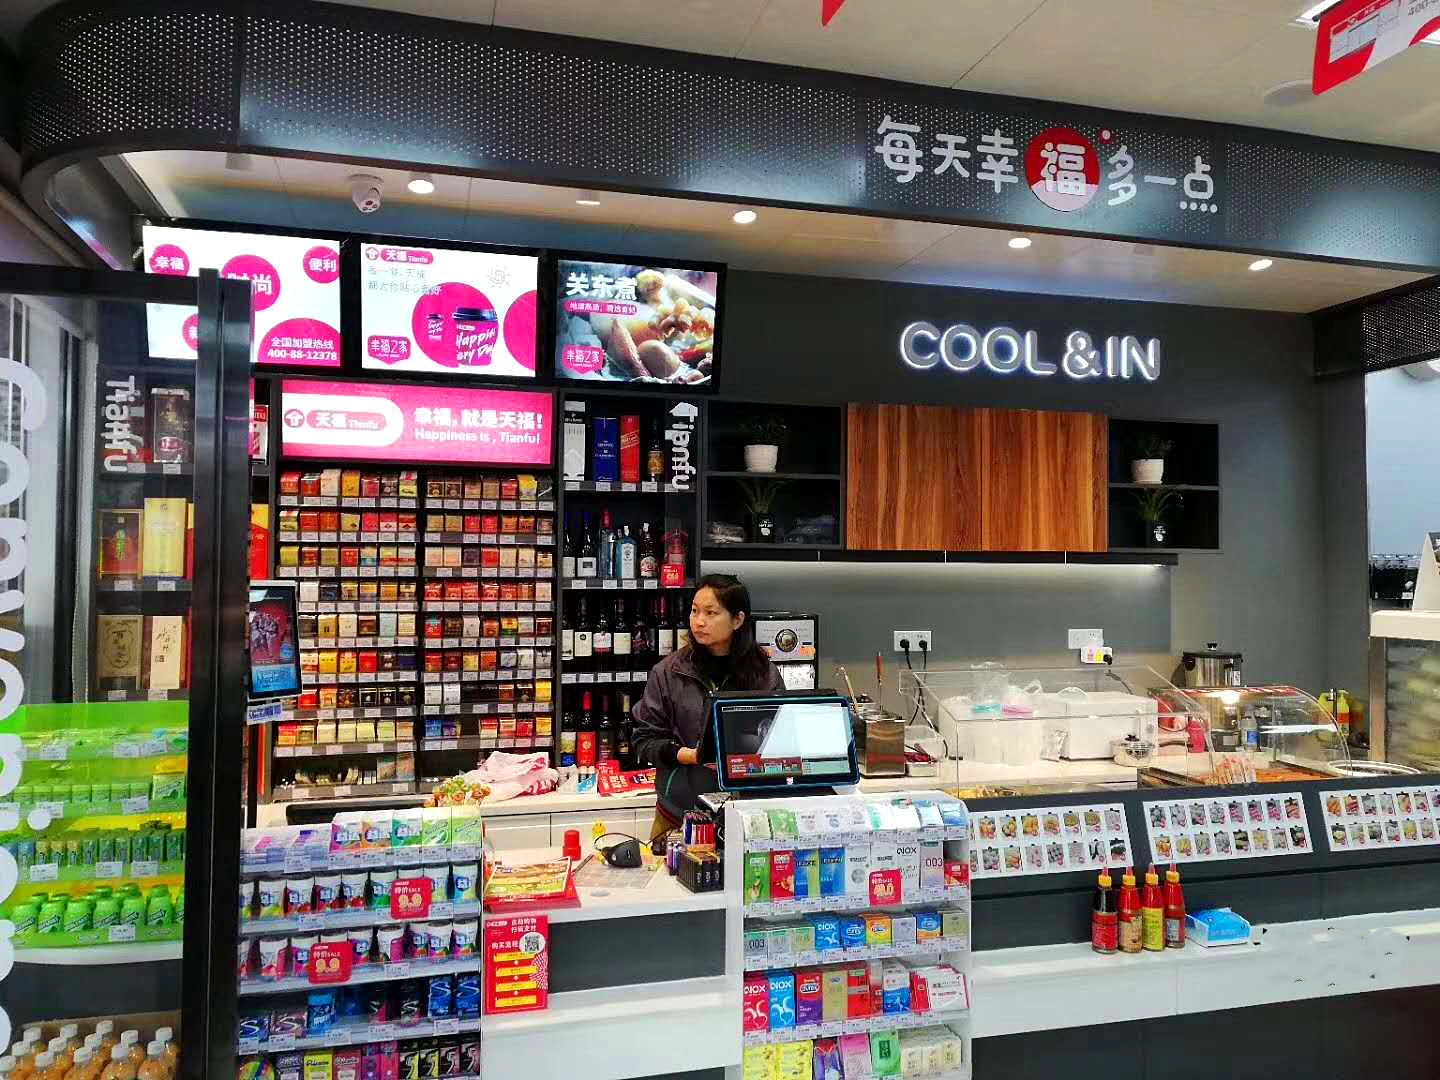 广州市商务局关于印发广州市推动便利店品牌化连锁化发展工作方案的通知